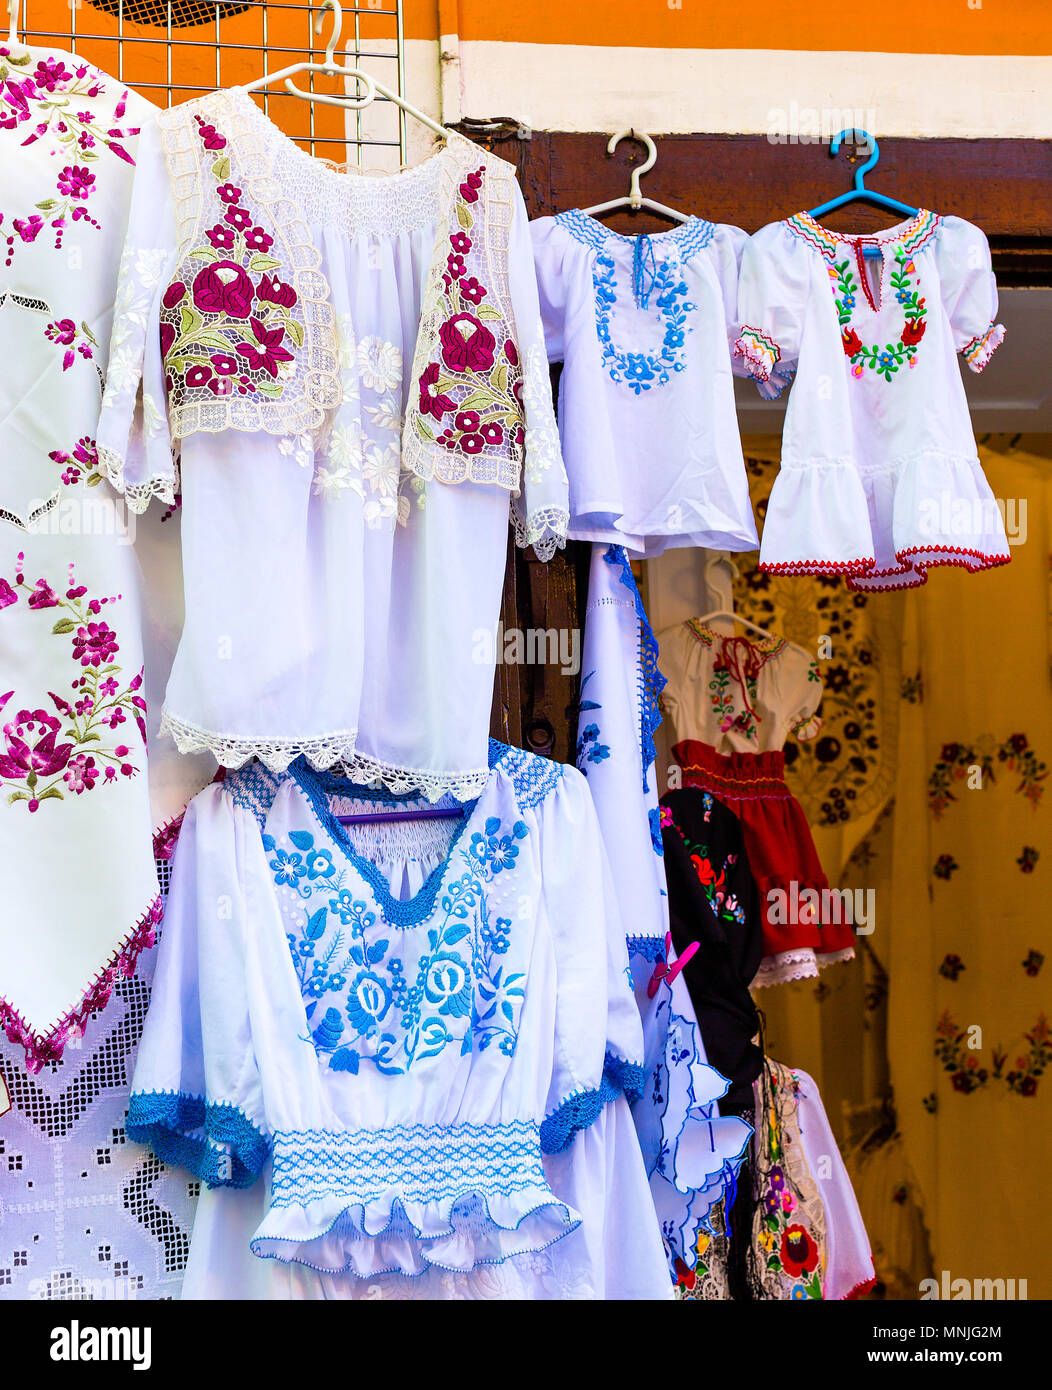 Schönes helles ethnischen Shirts und Tischdecken mit traditionellen ungarischen Stickerei in einer Straße zu speichern. Vertikale Foto Stockfoto